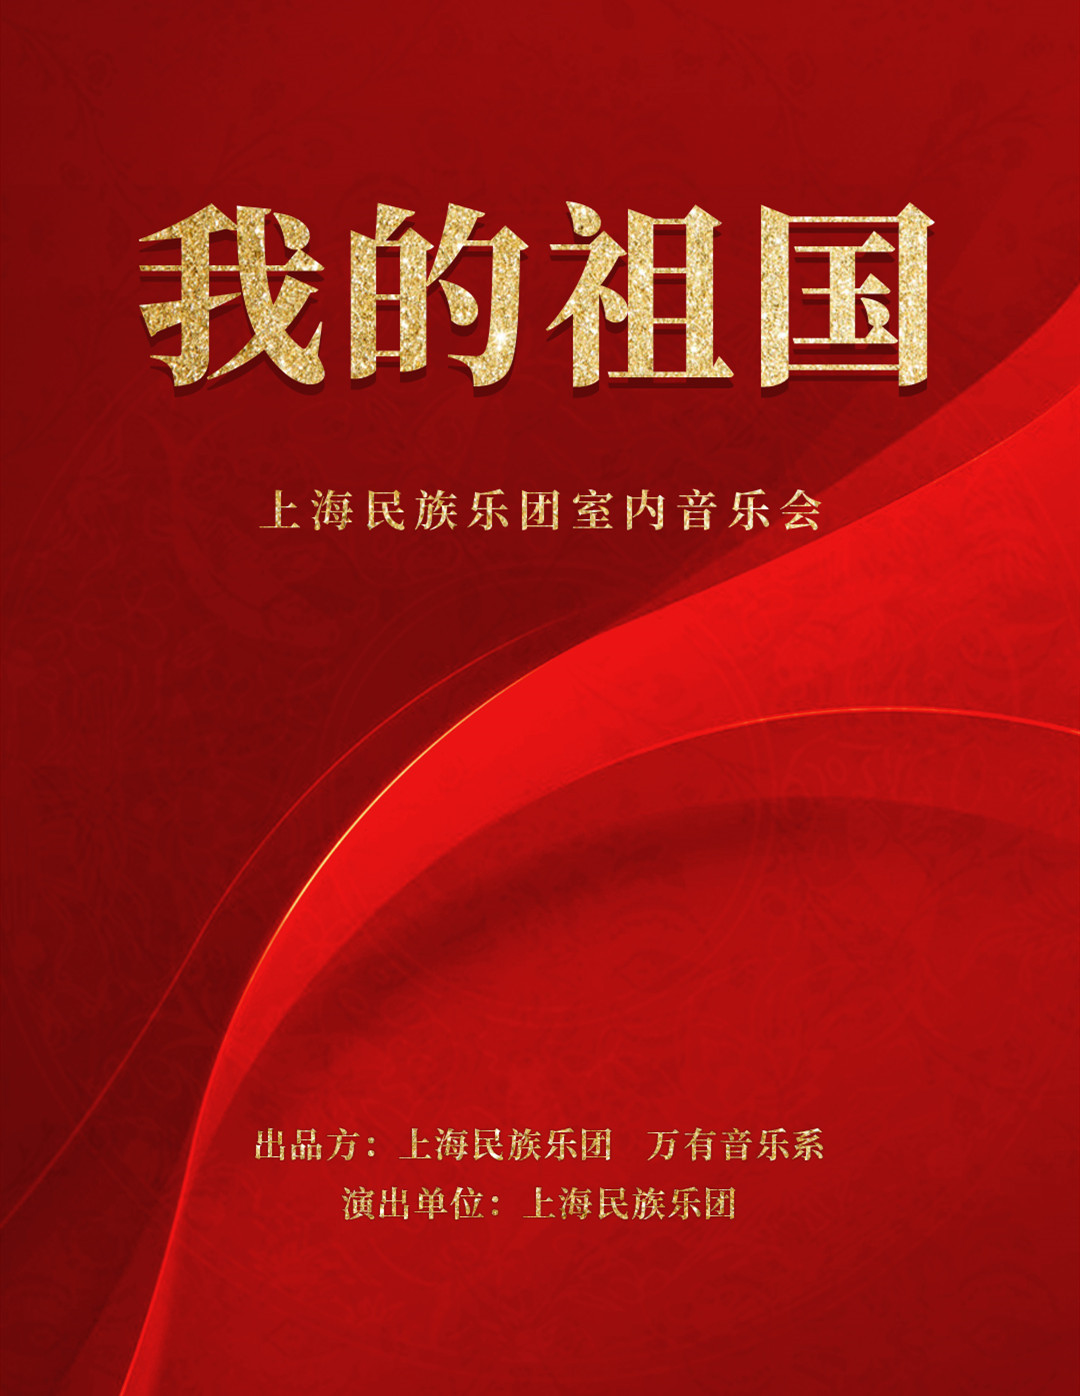 2021上海民族乐团郑州音乐会演出阵容及门票价格